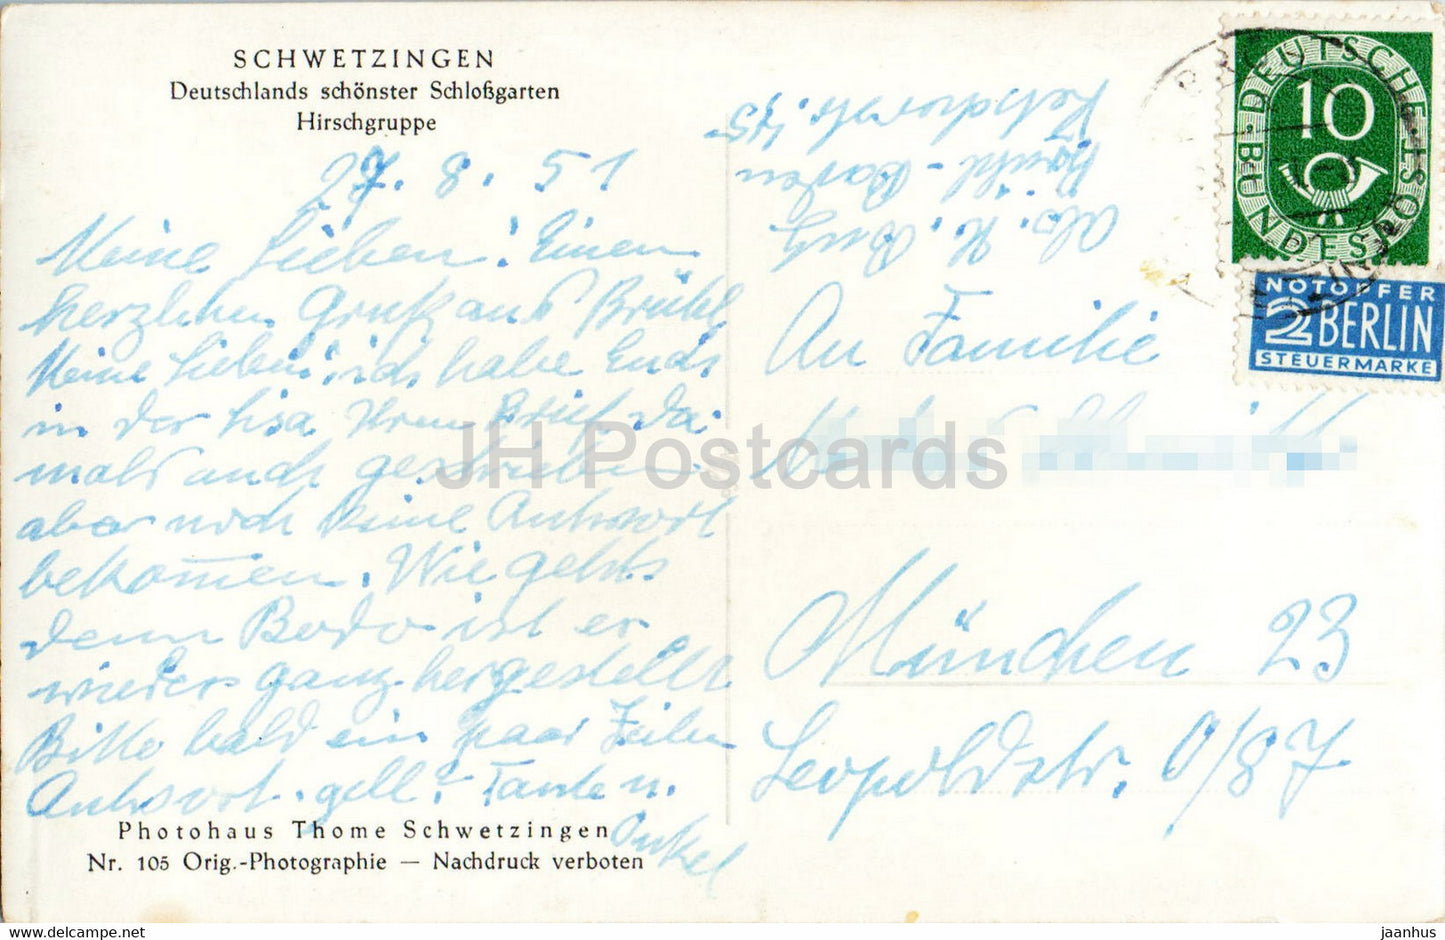 Schwetzingen - Deutschlands schönster Schlossgarten - Hirschgruppe - alte Postkarte - 1951 - Deutschland - gebraucht